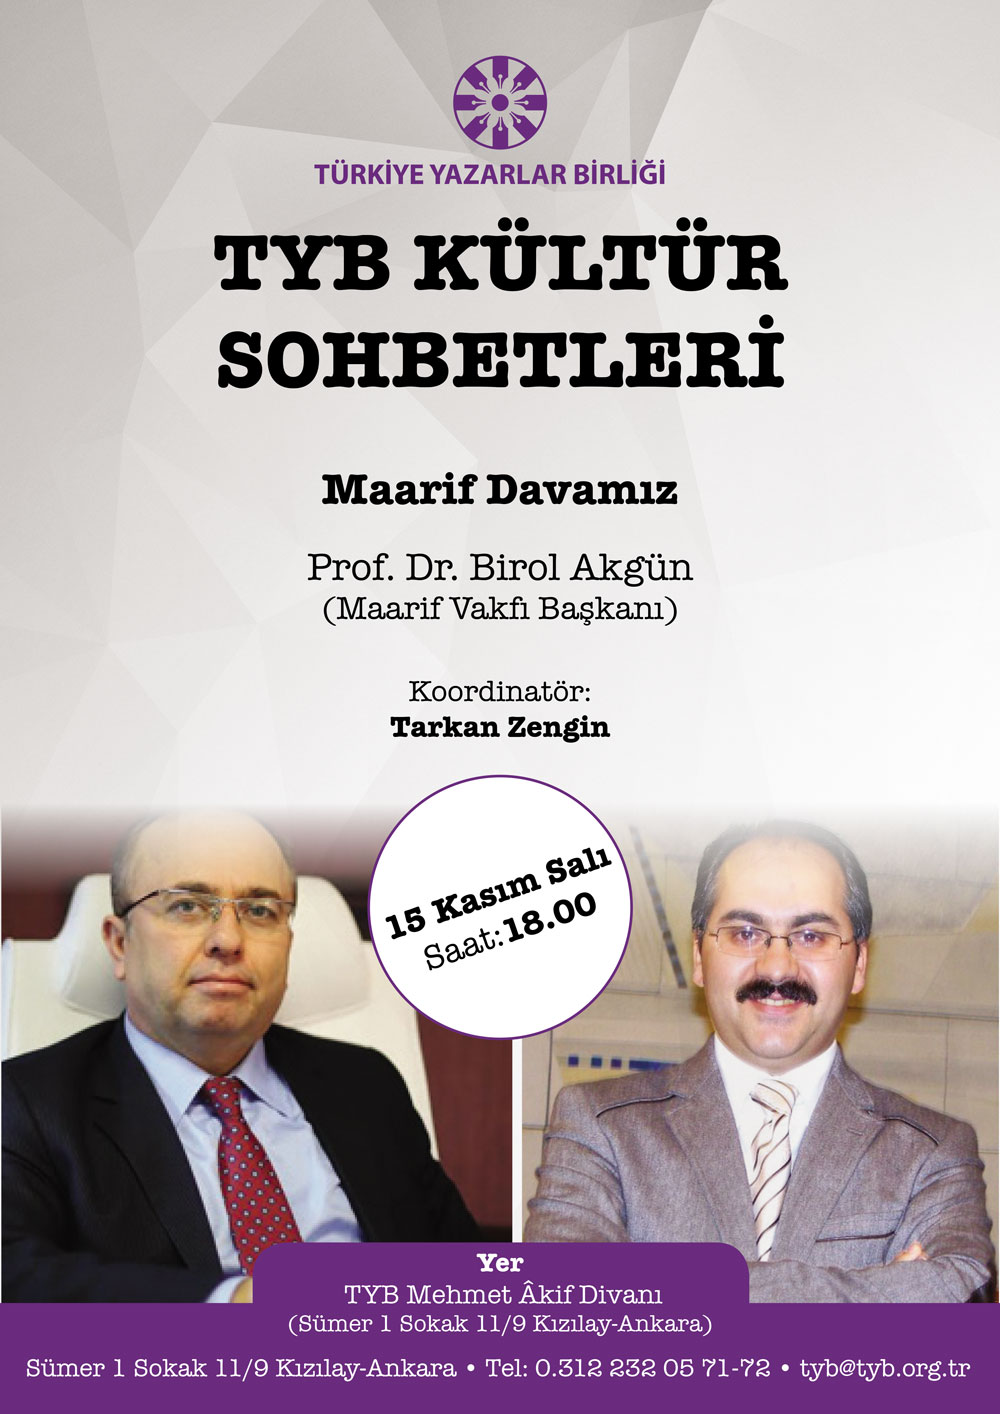 TYB Kültür Sohbetlerinde bu akşam: Prof. Dr. Birol Akgün ile Maarif Davamız